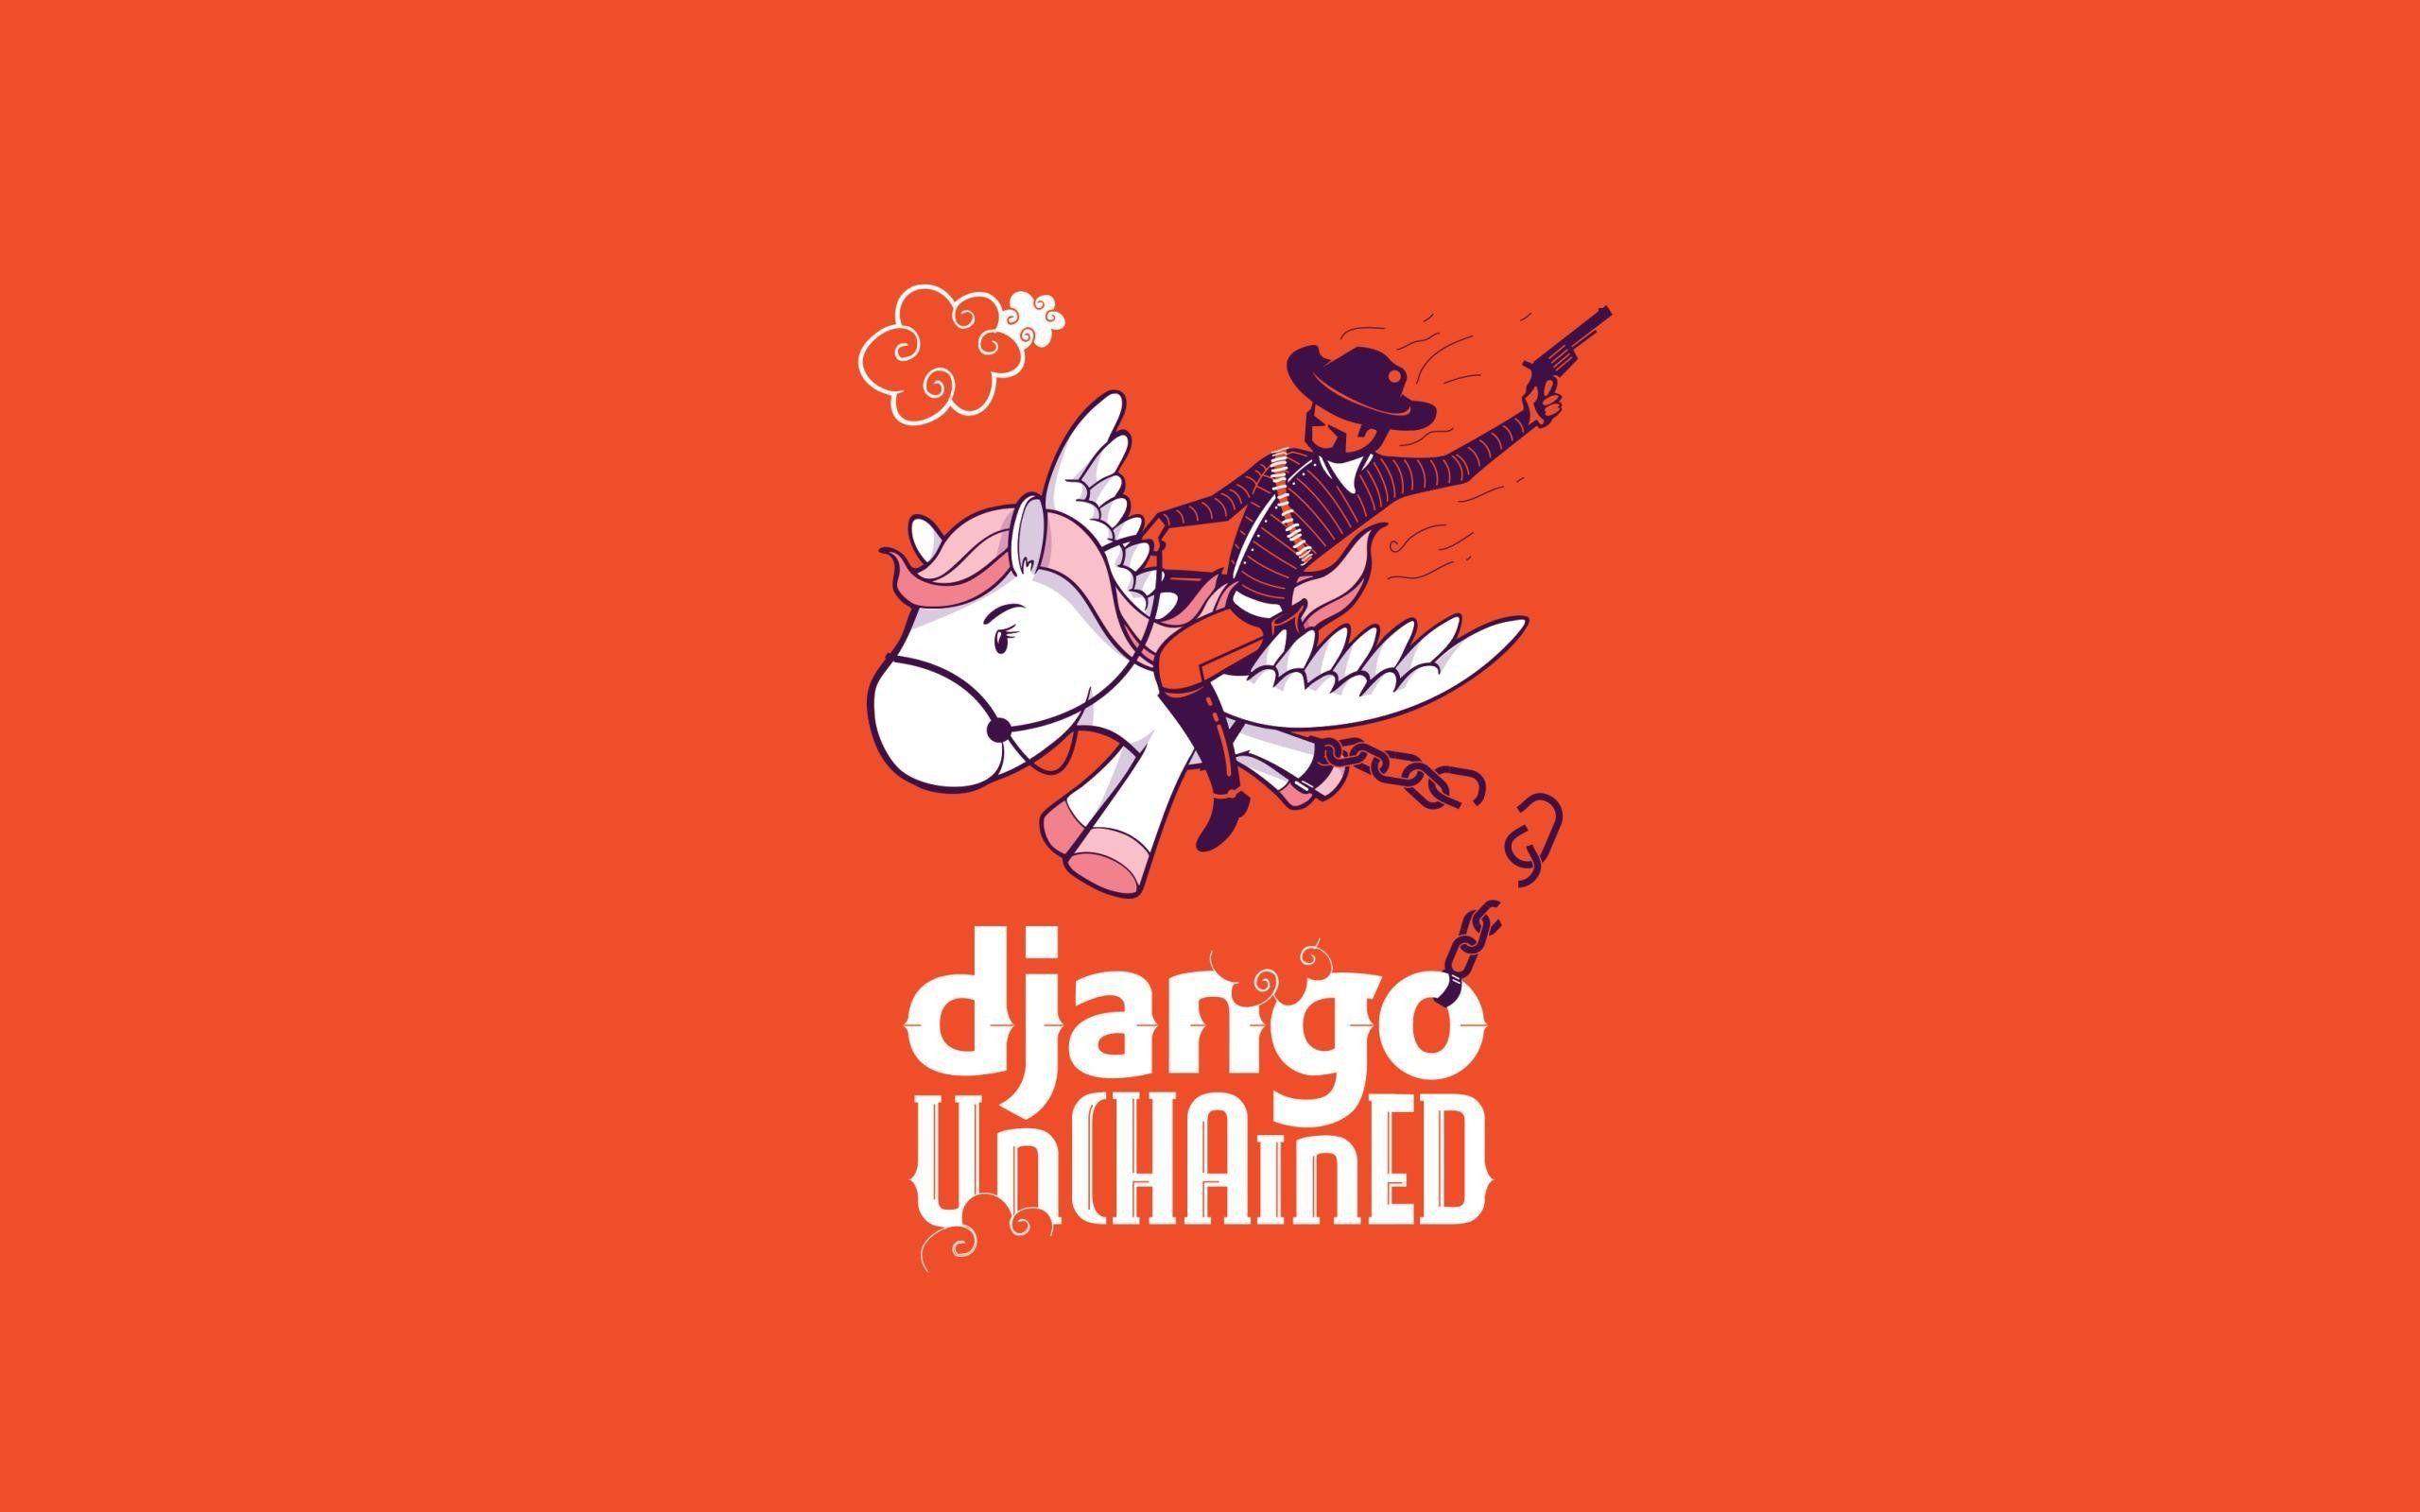 Funny Django Unchained Django wallpaperx1600